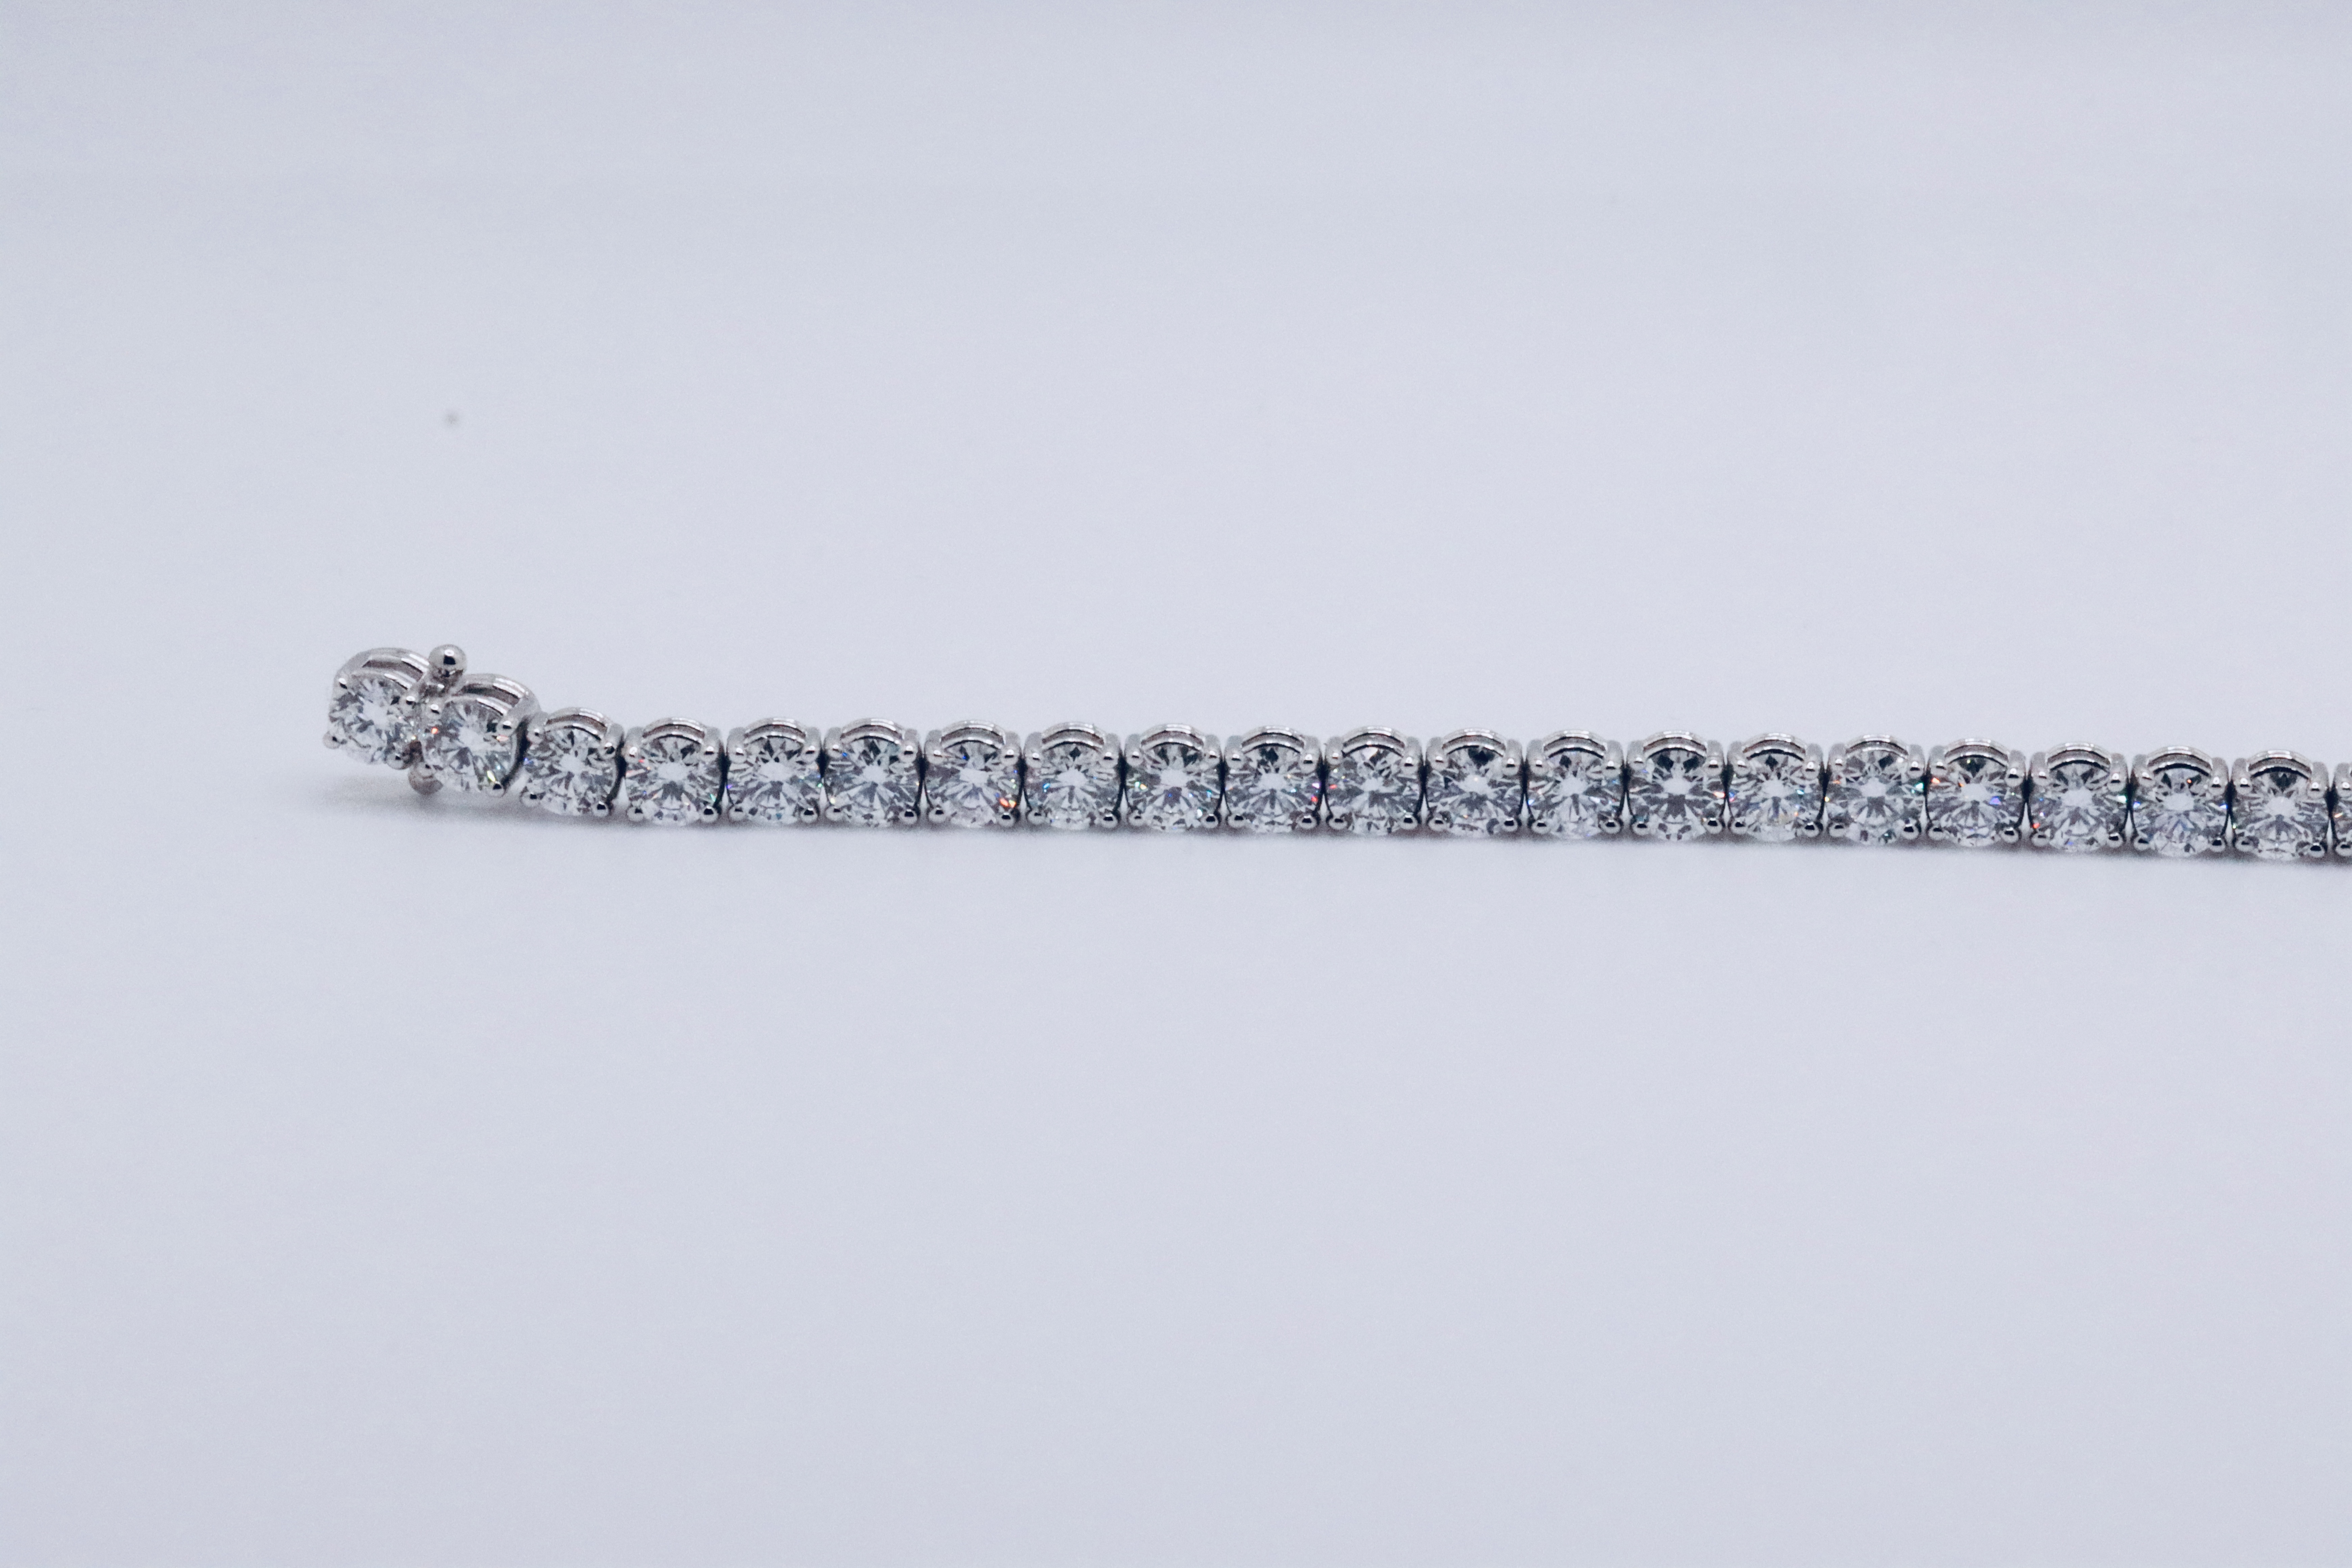 Round Brilliant Cut 14 Carat Diamond Tennis Bracelet D Colour VVS Clarity - 18Kt White Gold - IGI - Image 15 of 31